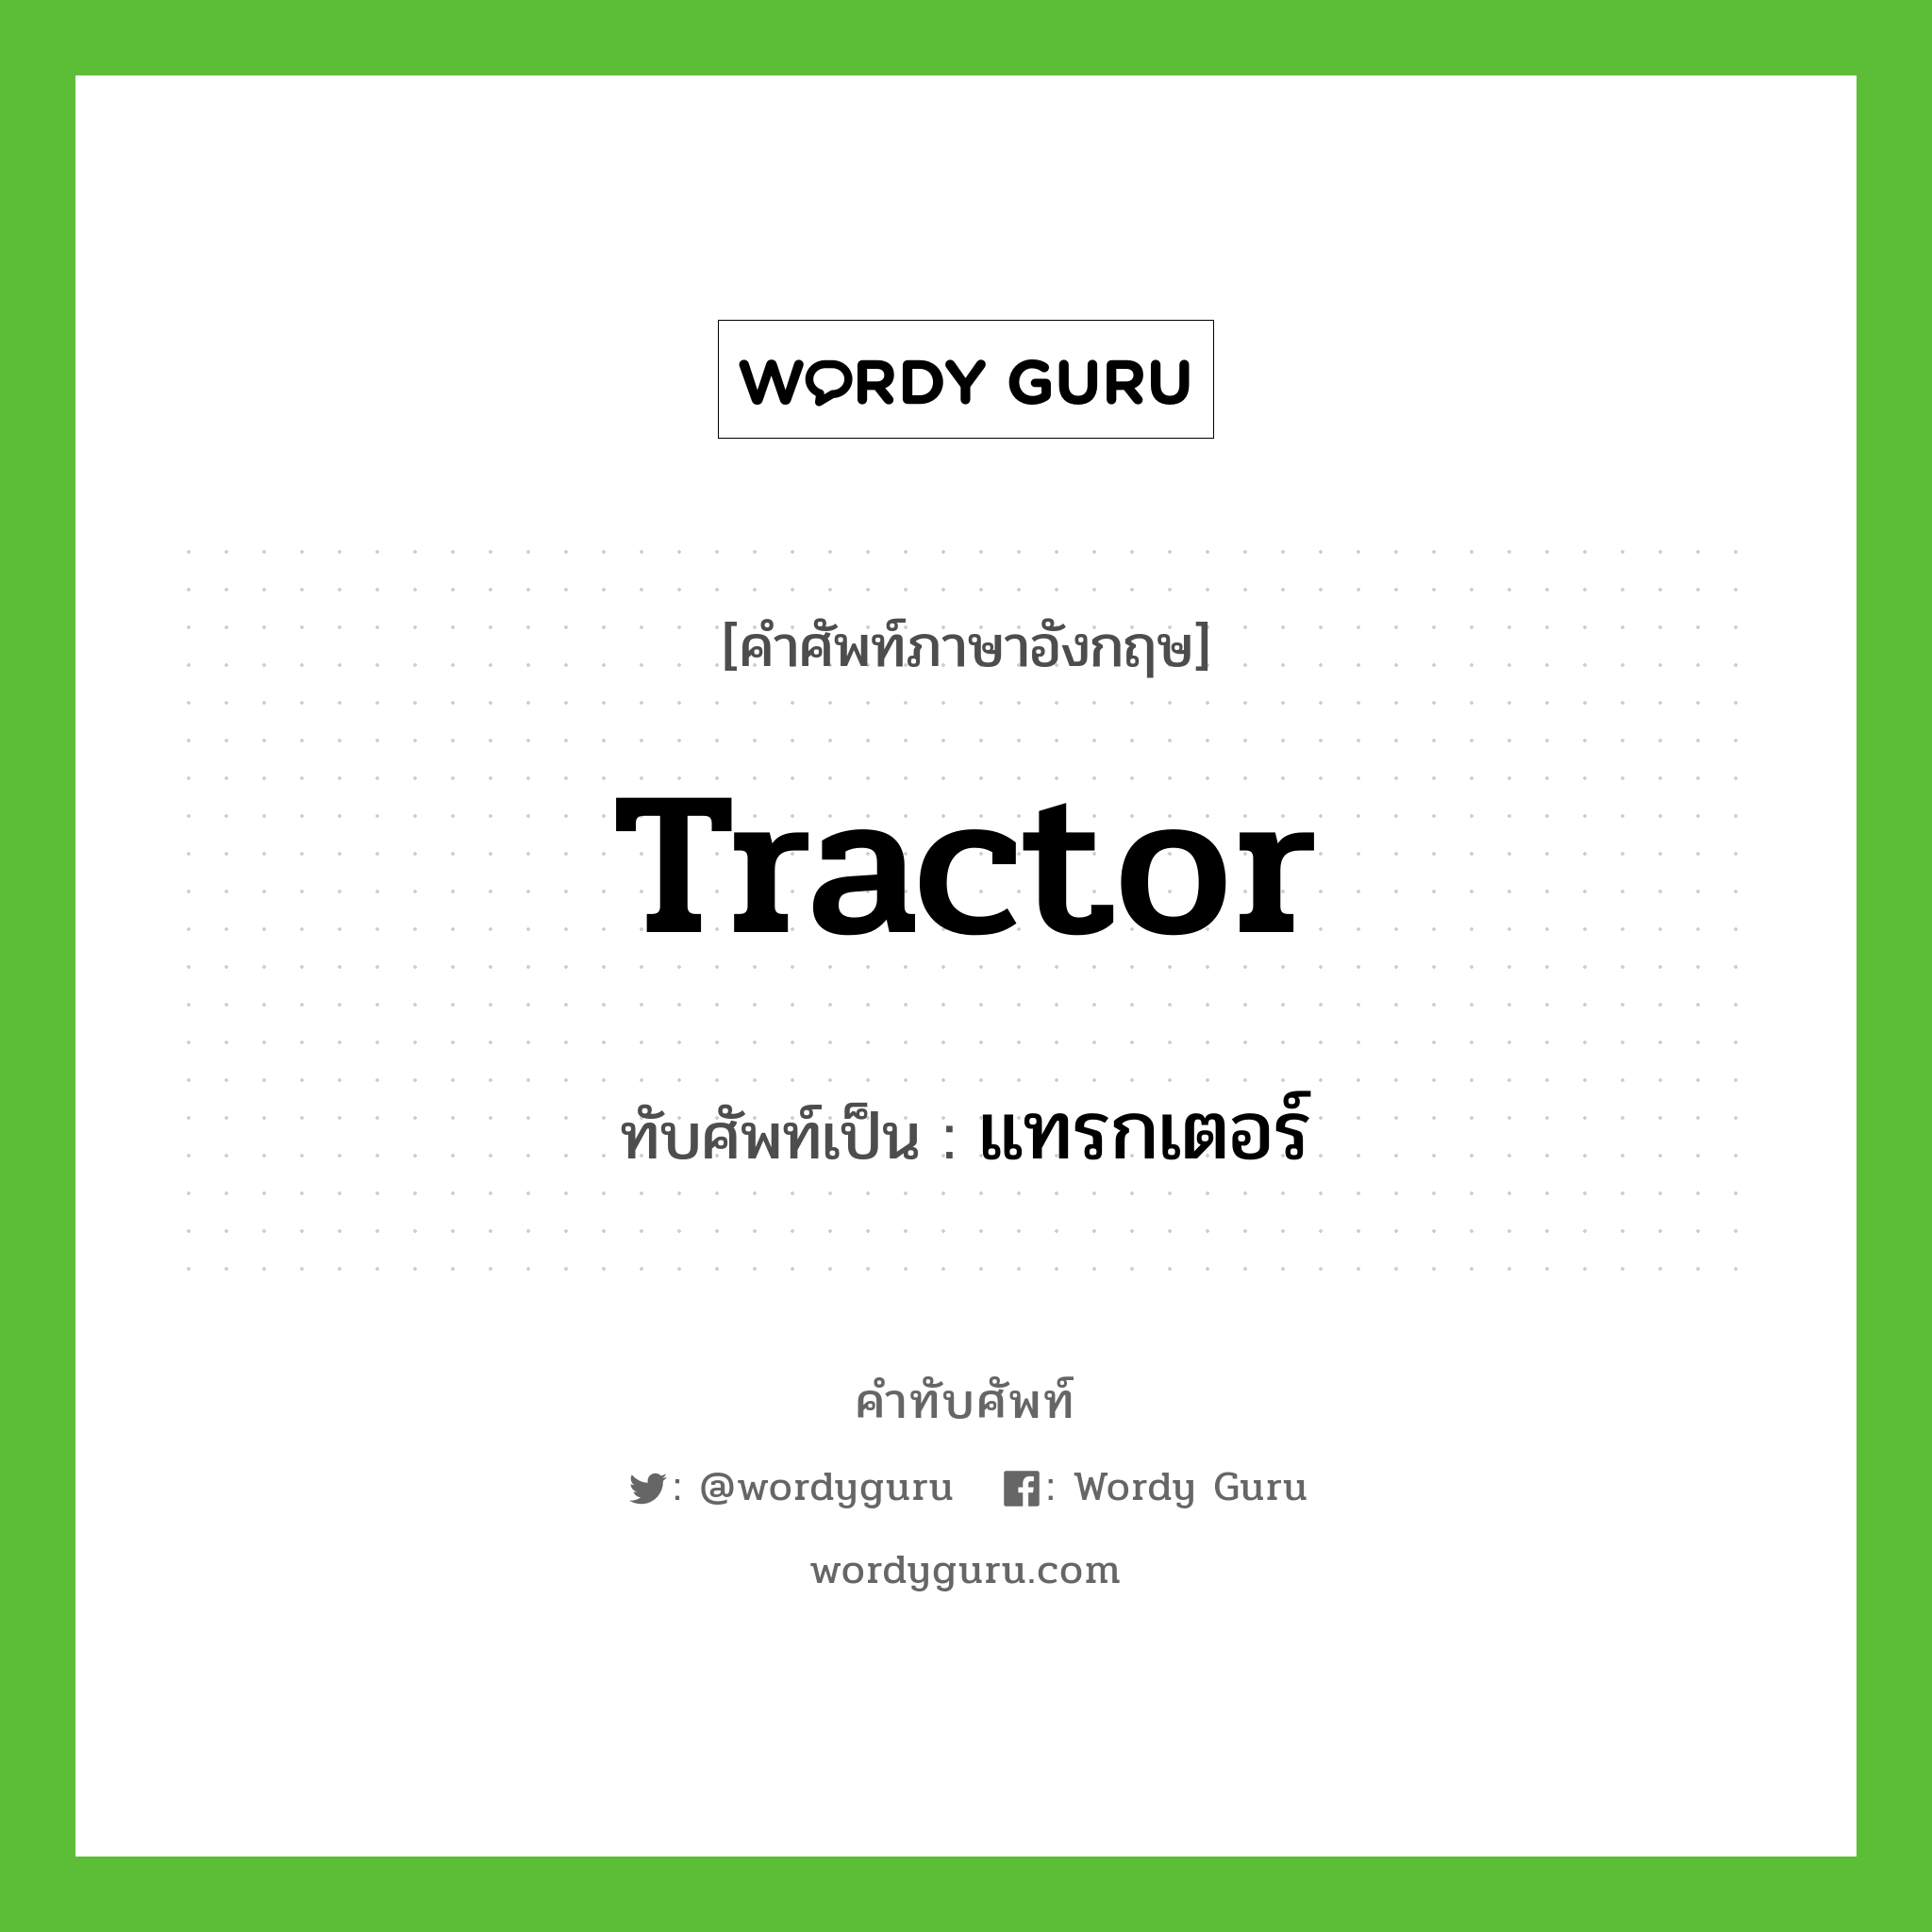 tractor เขียนเป็นคำไทยว่าอะไร?, คำศัพท์ภาษาอังกฤษ tractor ทับศัพท์เป็น แทรกเตอร์